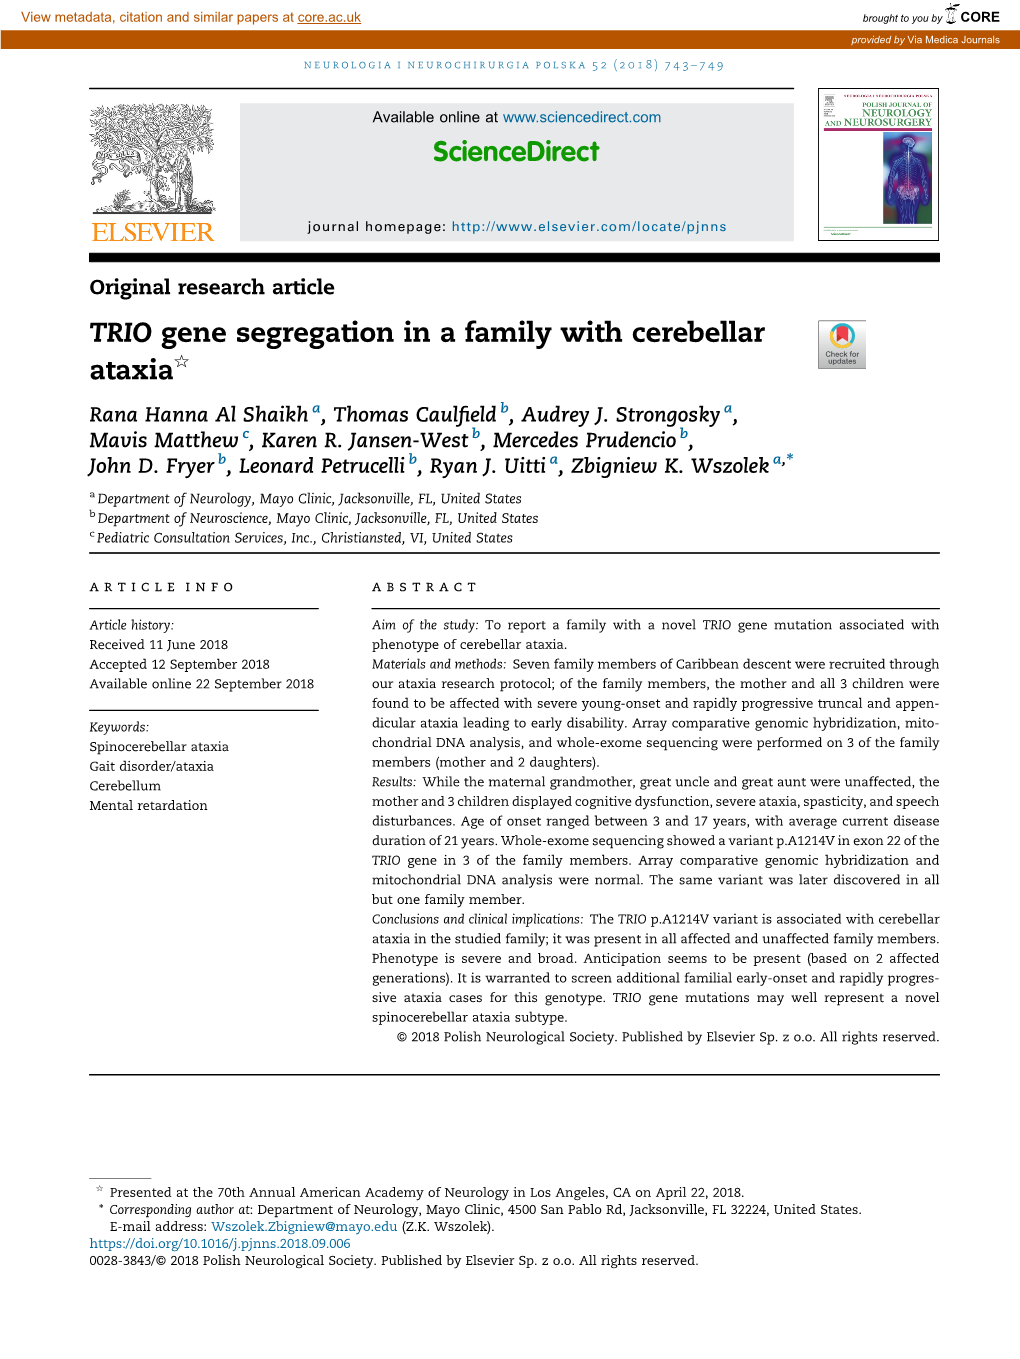 TRIO Gene Segregation in a Family with Cerebellar Ataxia